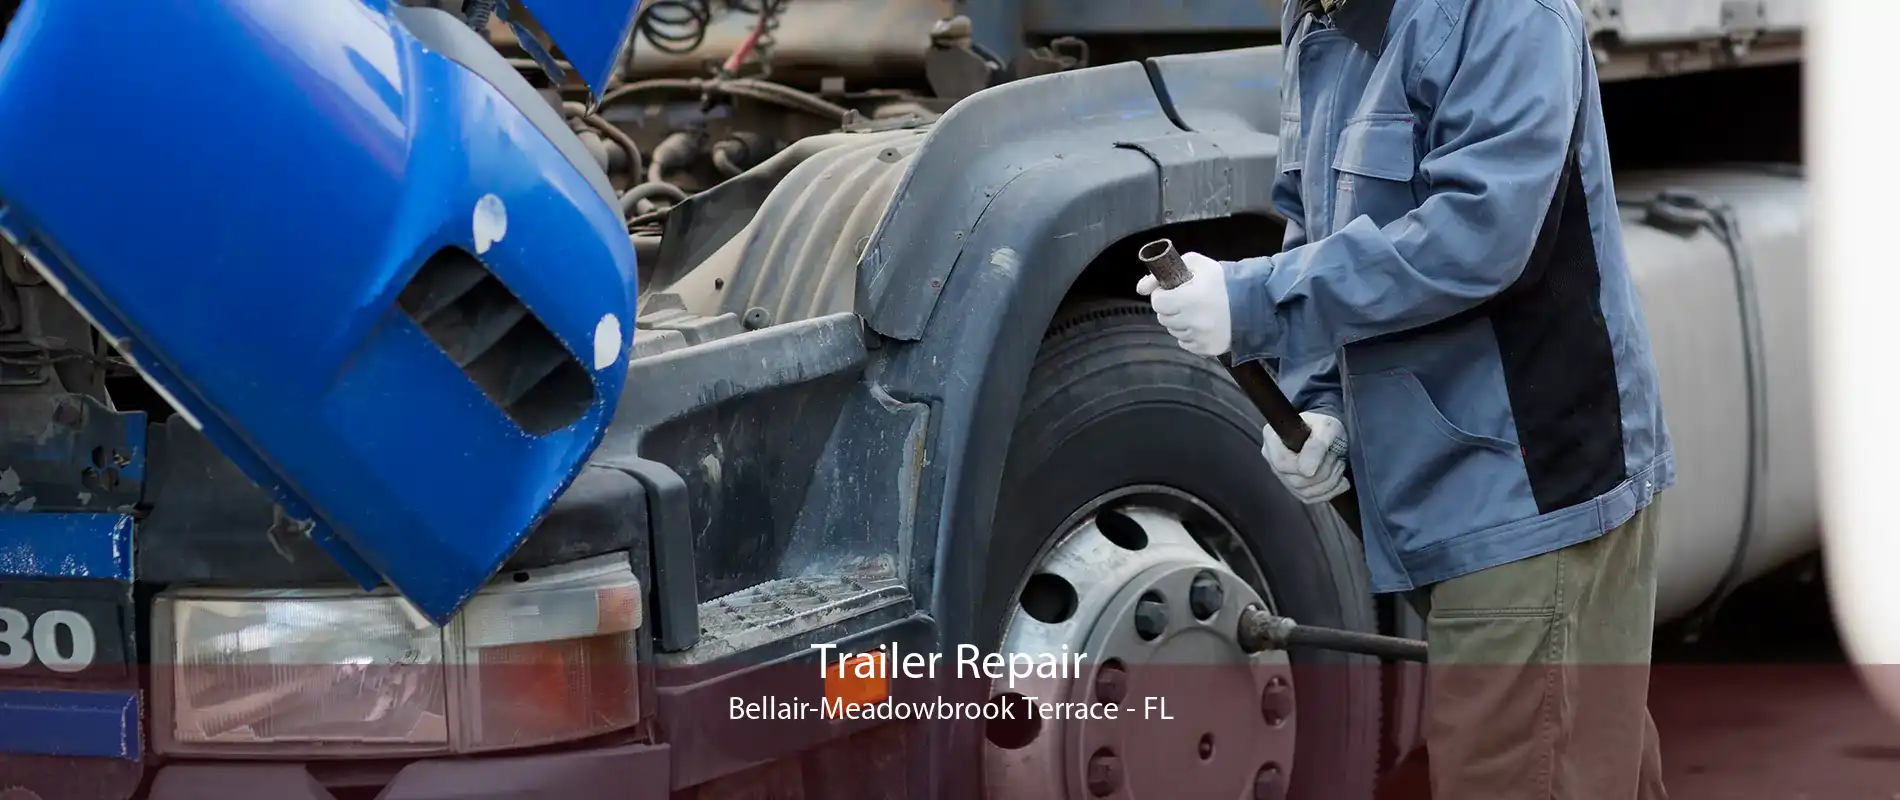 Trailer Repair Bellair-Meadowbrook Terrace - FL